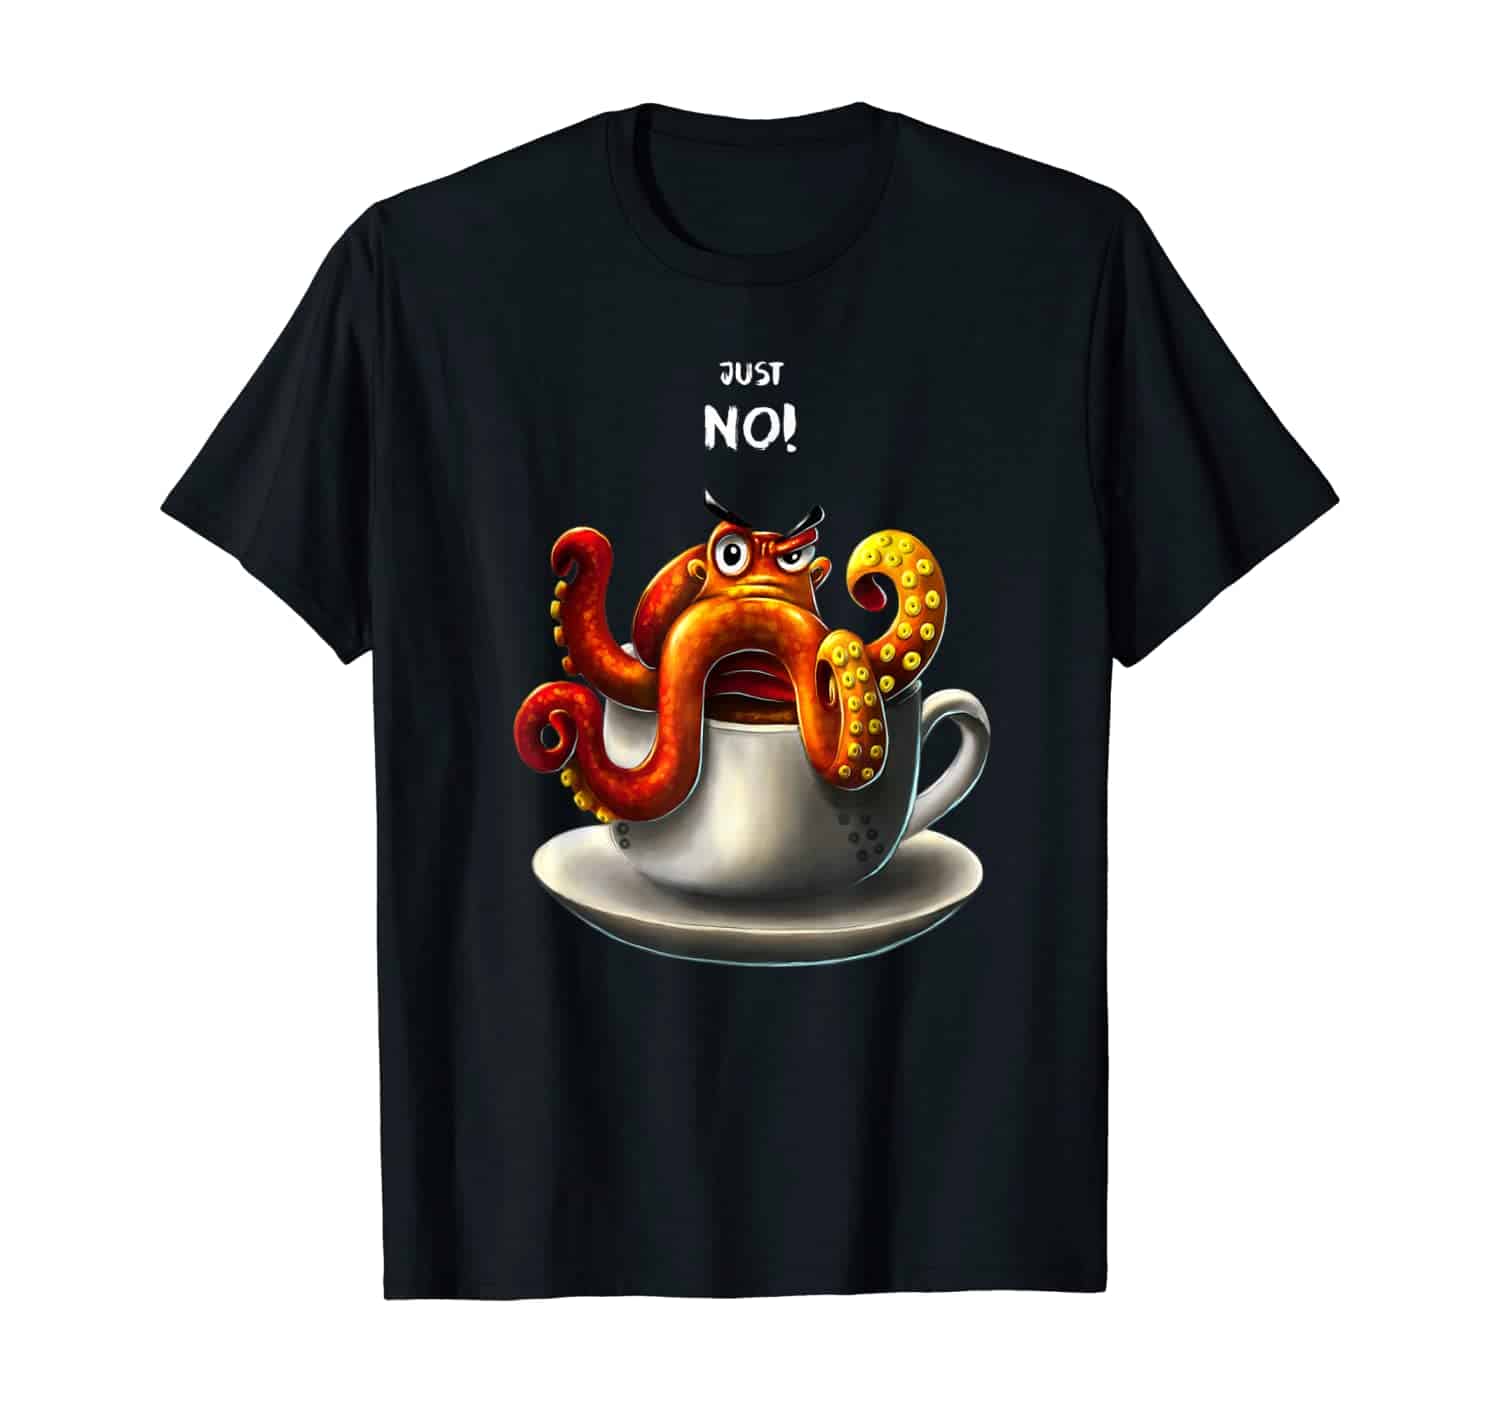 Oktopus Tintenfisch Kaffee Trinker, Kaffee Liebhaber, Morgenmuffel, Nein Sager, Kaffeetrinker, Kaffee Spruch T-Shirt Design